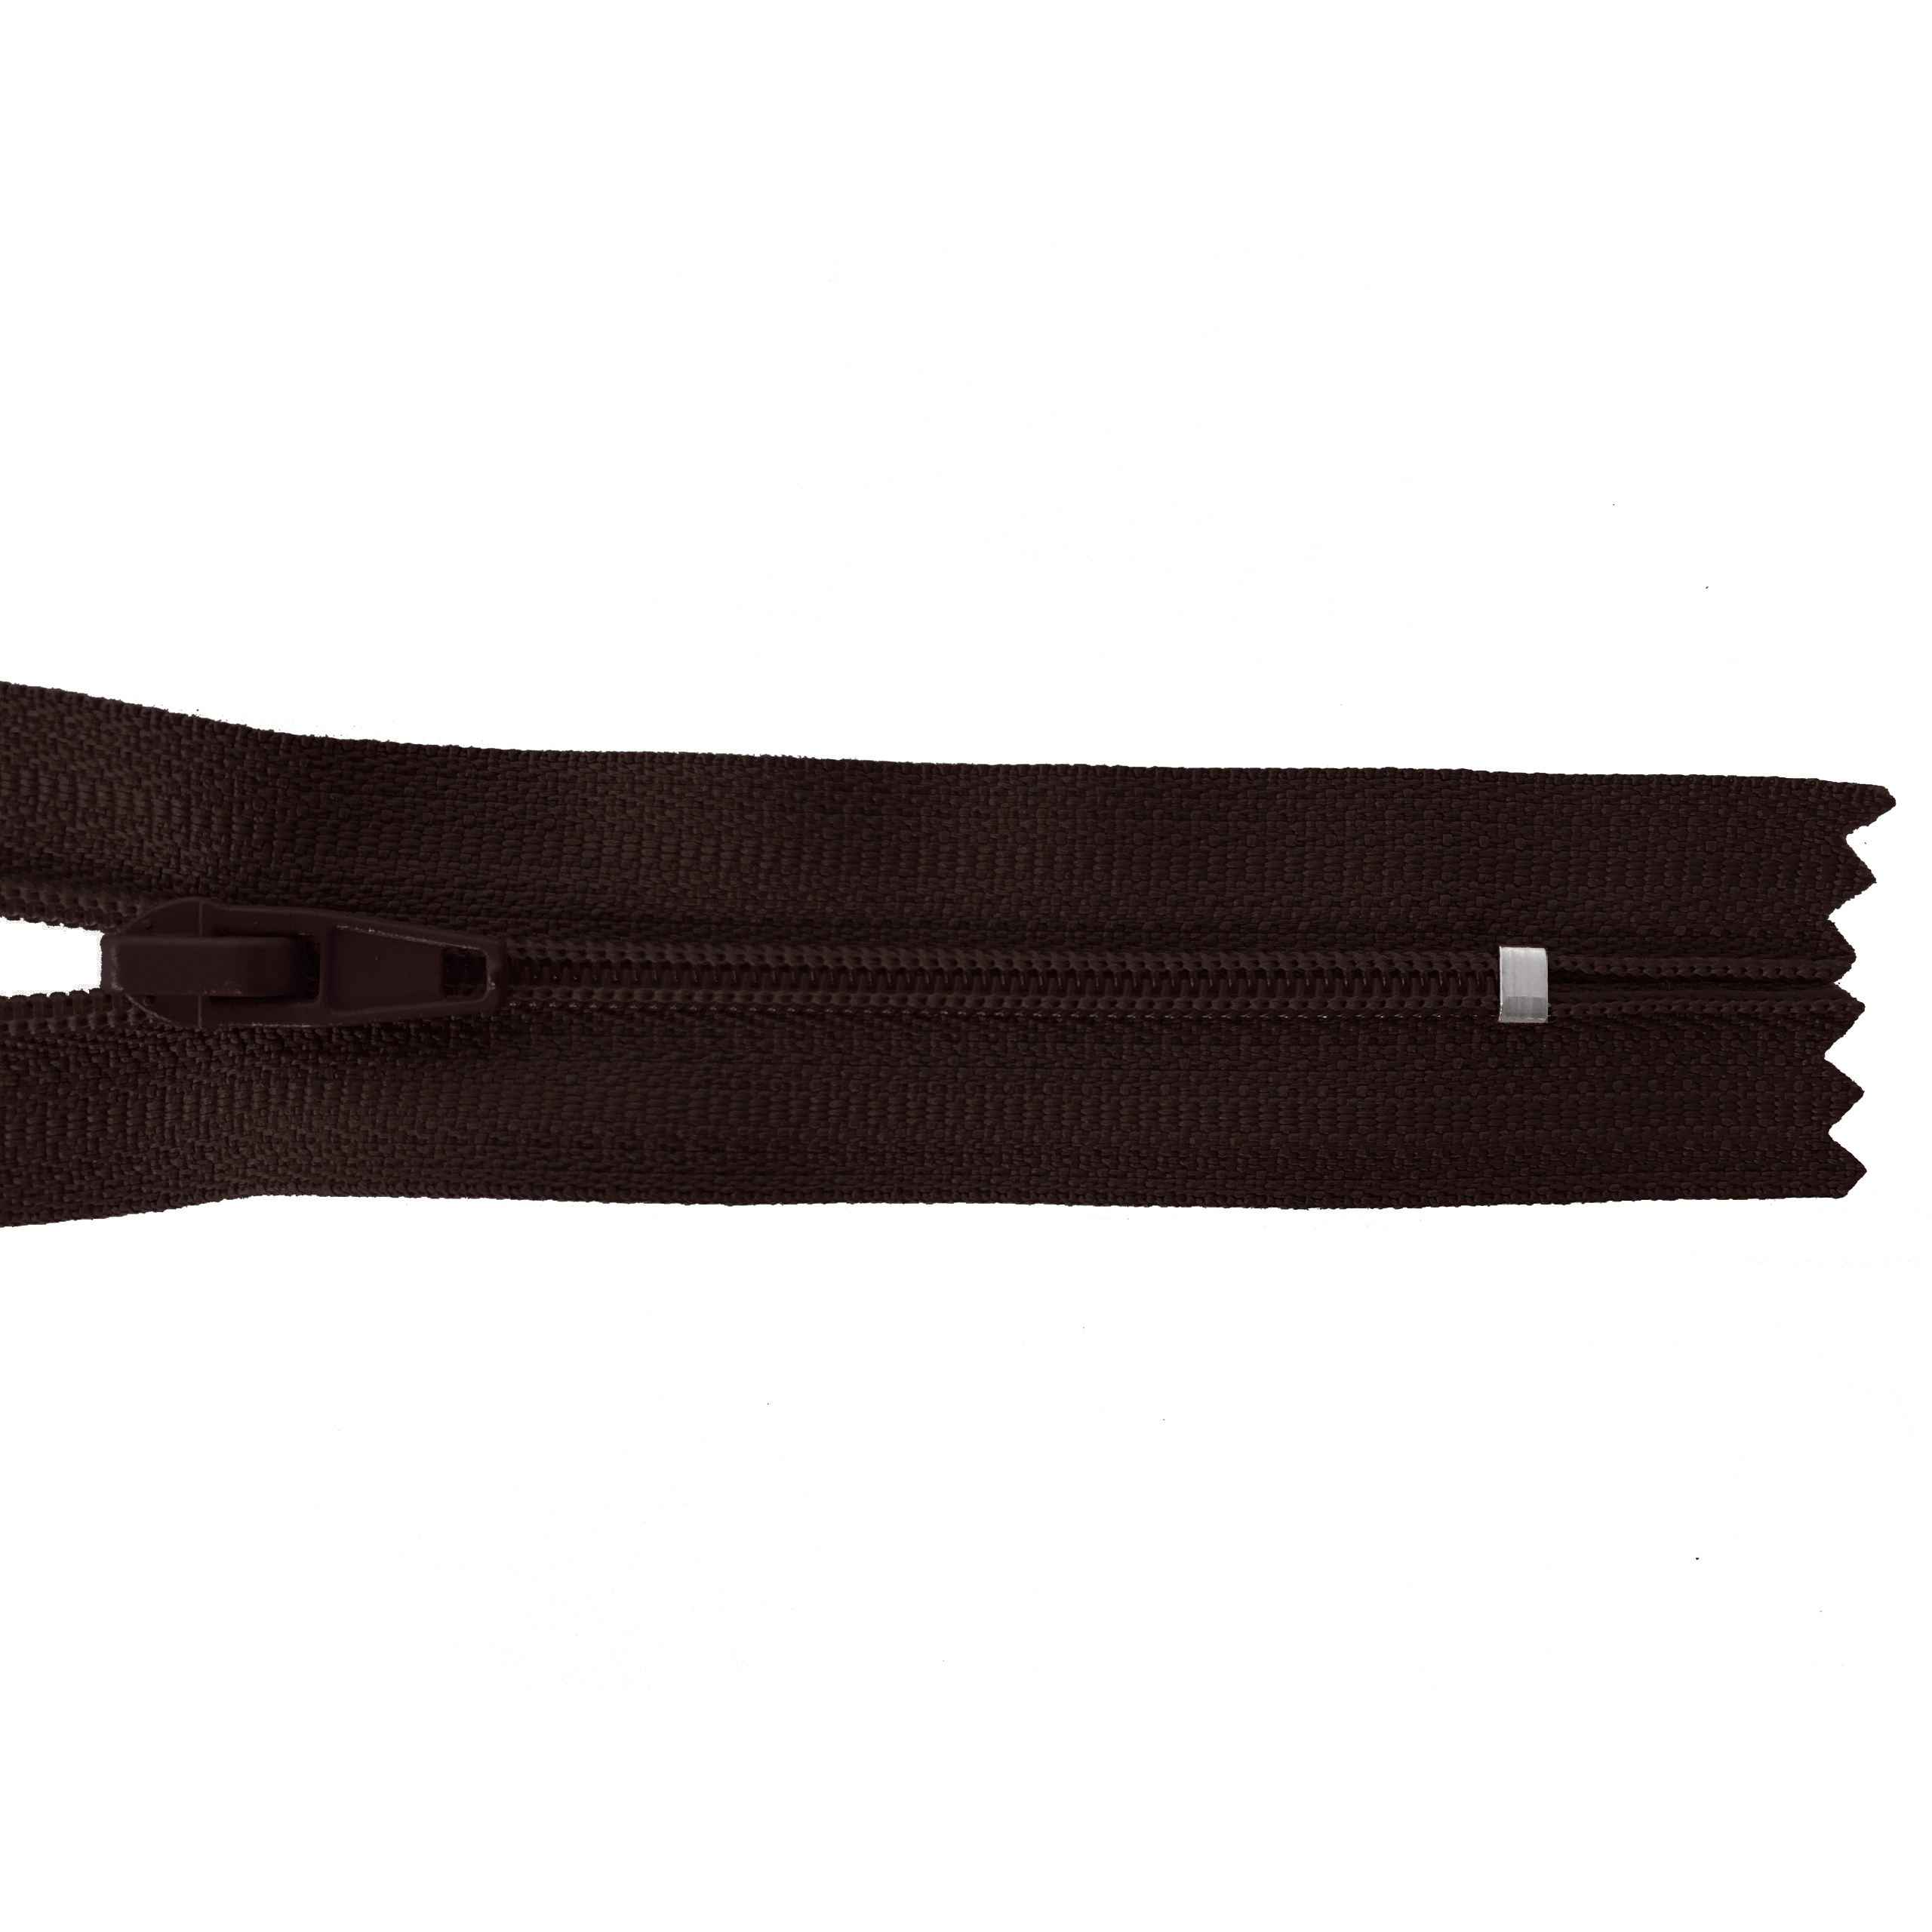 Reißverschluss nicht teilbar, PES-Spirale fein, schwarzbraun, hochwertiger Marken-Reißverschluss von Rubi/Barcelona